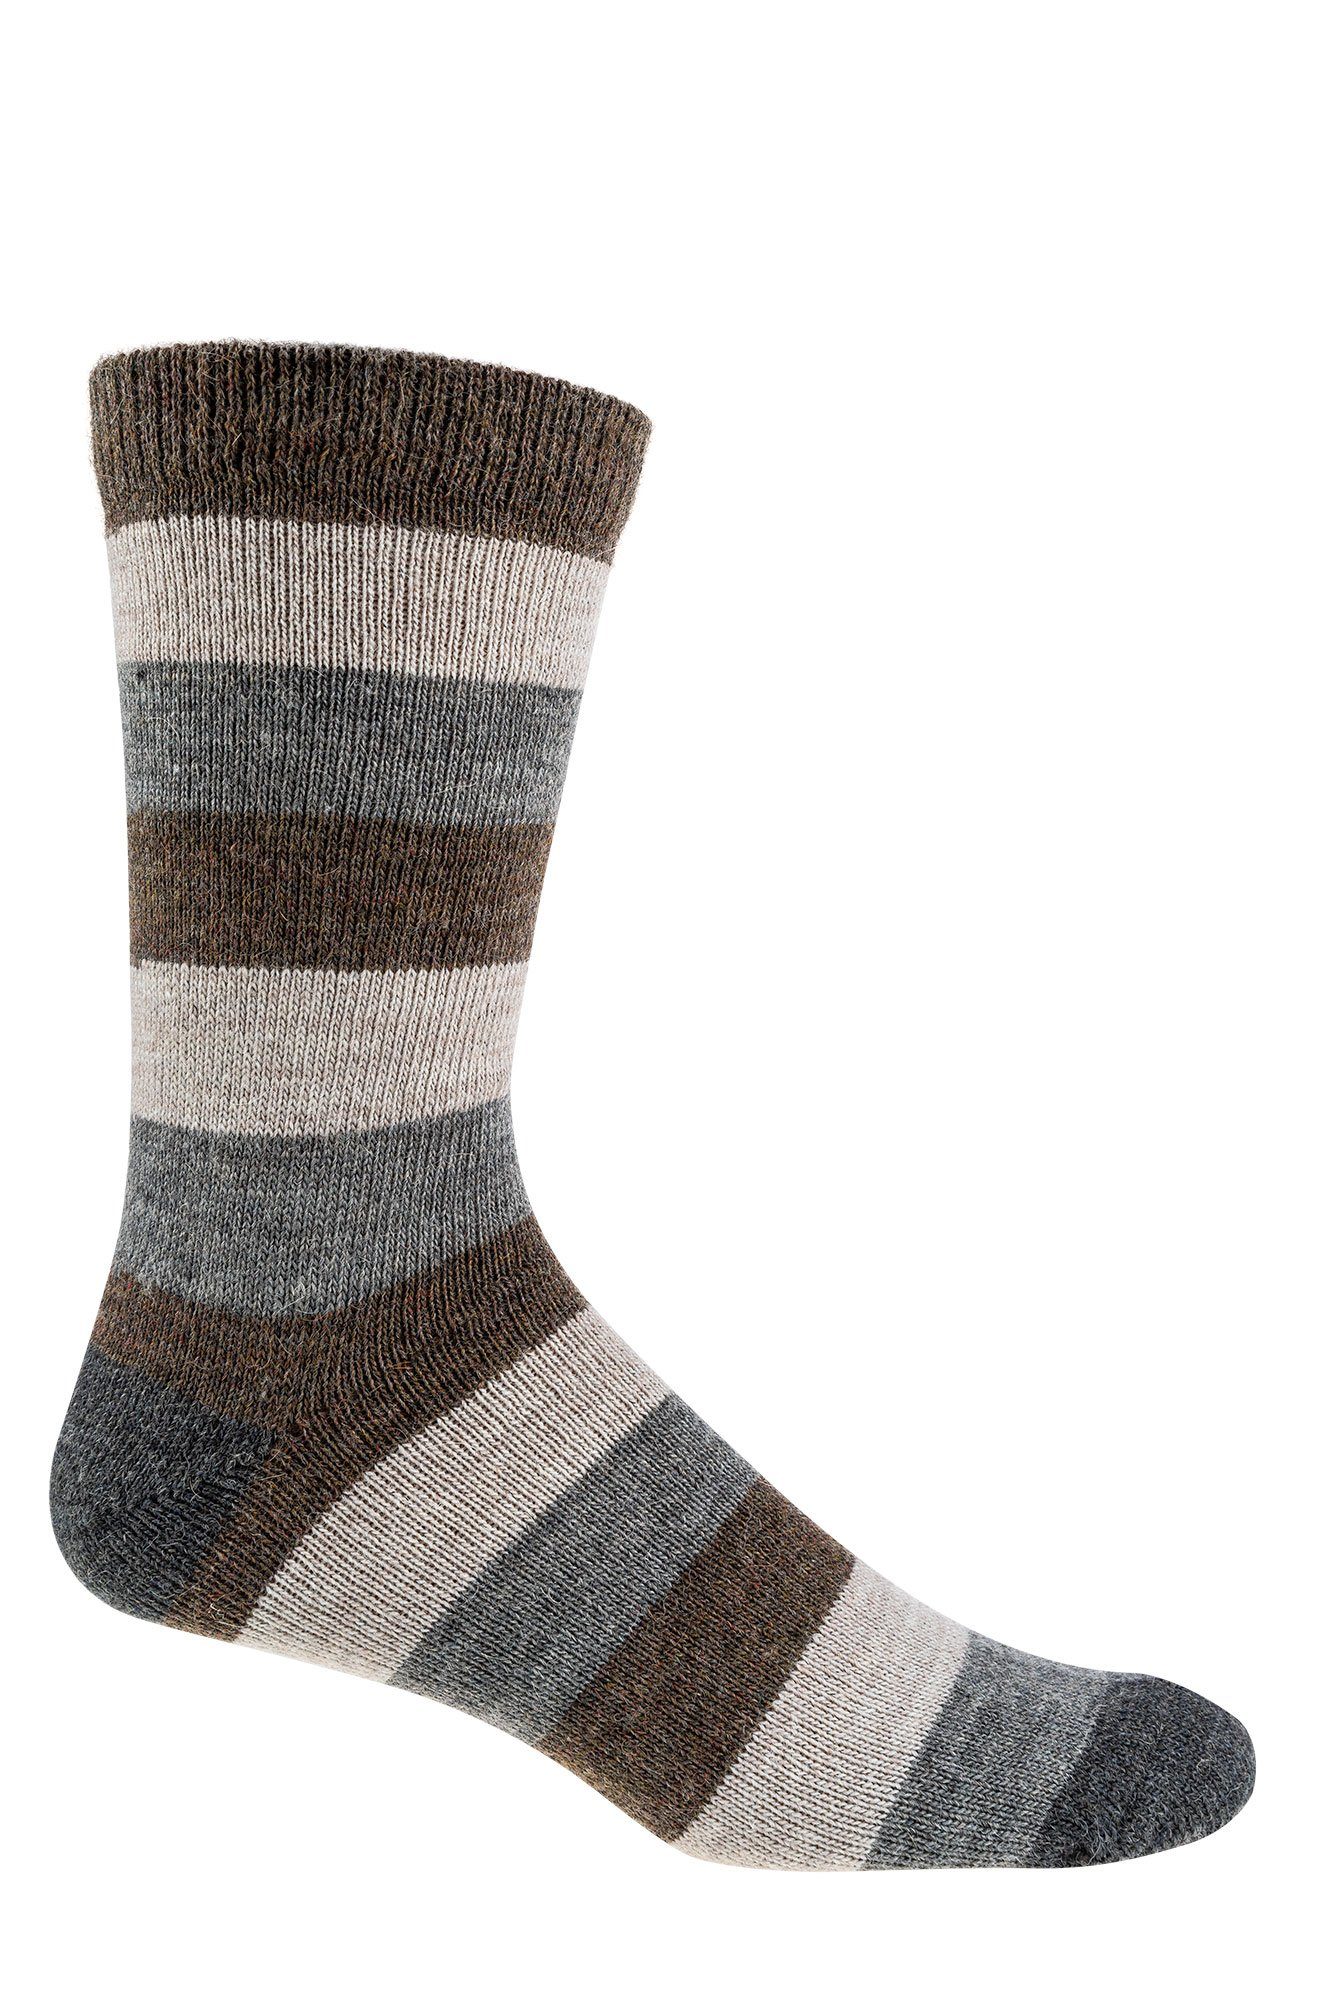 Fun Alpaka Schafwolle Paar) Wowerat Basicsocken und Wollsocken 4 Warme Naturfarben mit gestreifte Socks (3